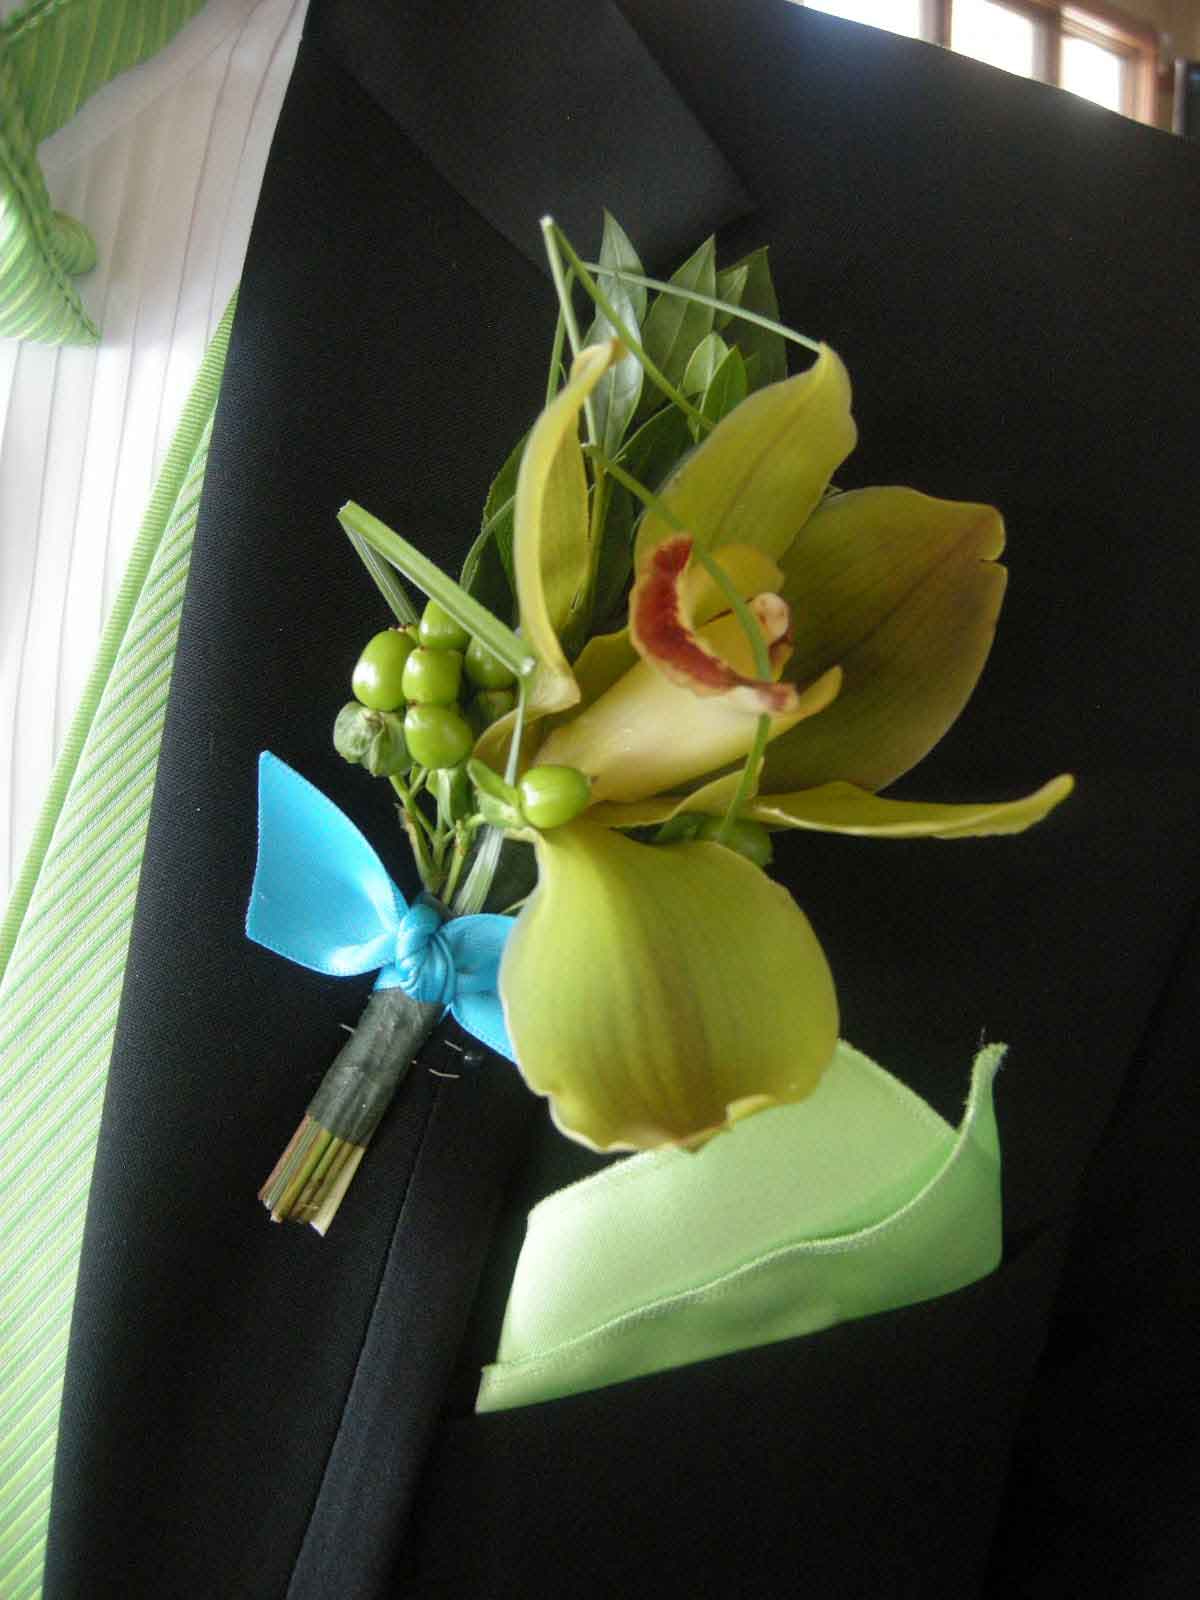 Hoa cài áo chú rể làm từ hoa địa lan xanh